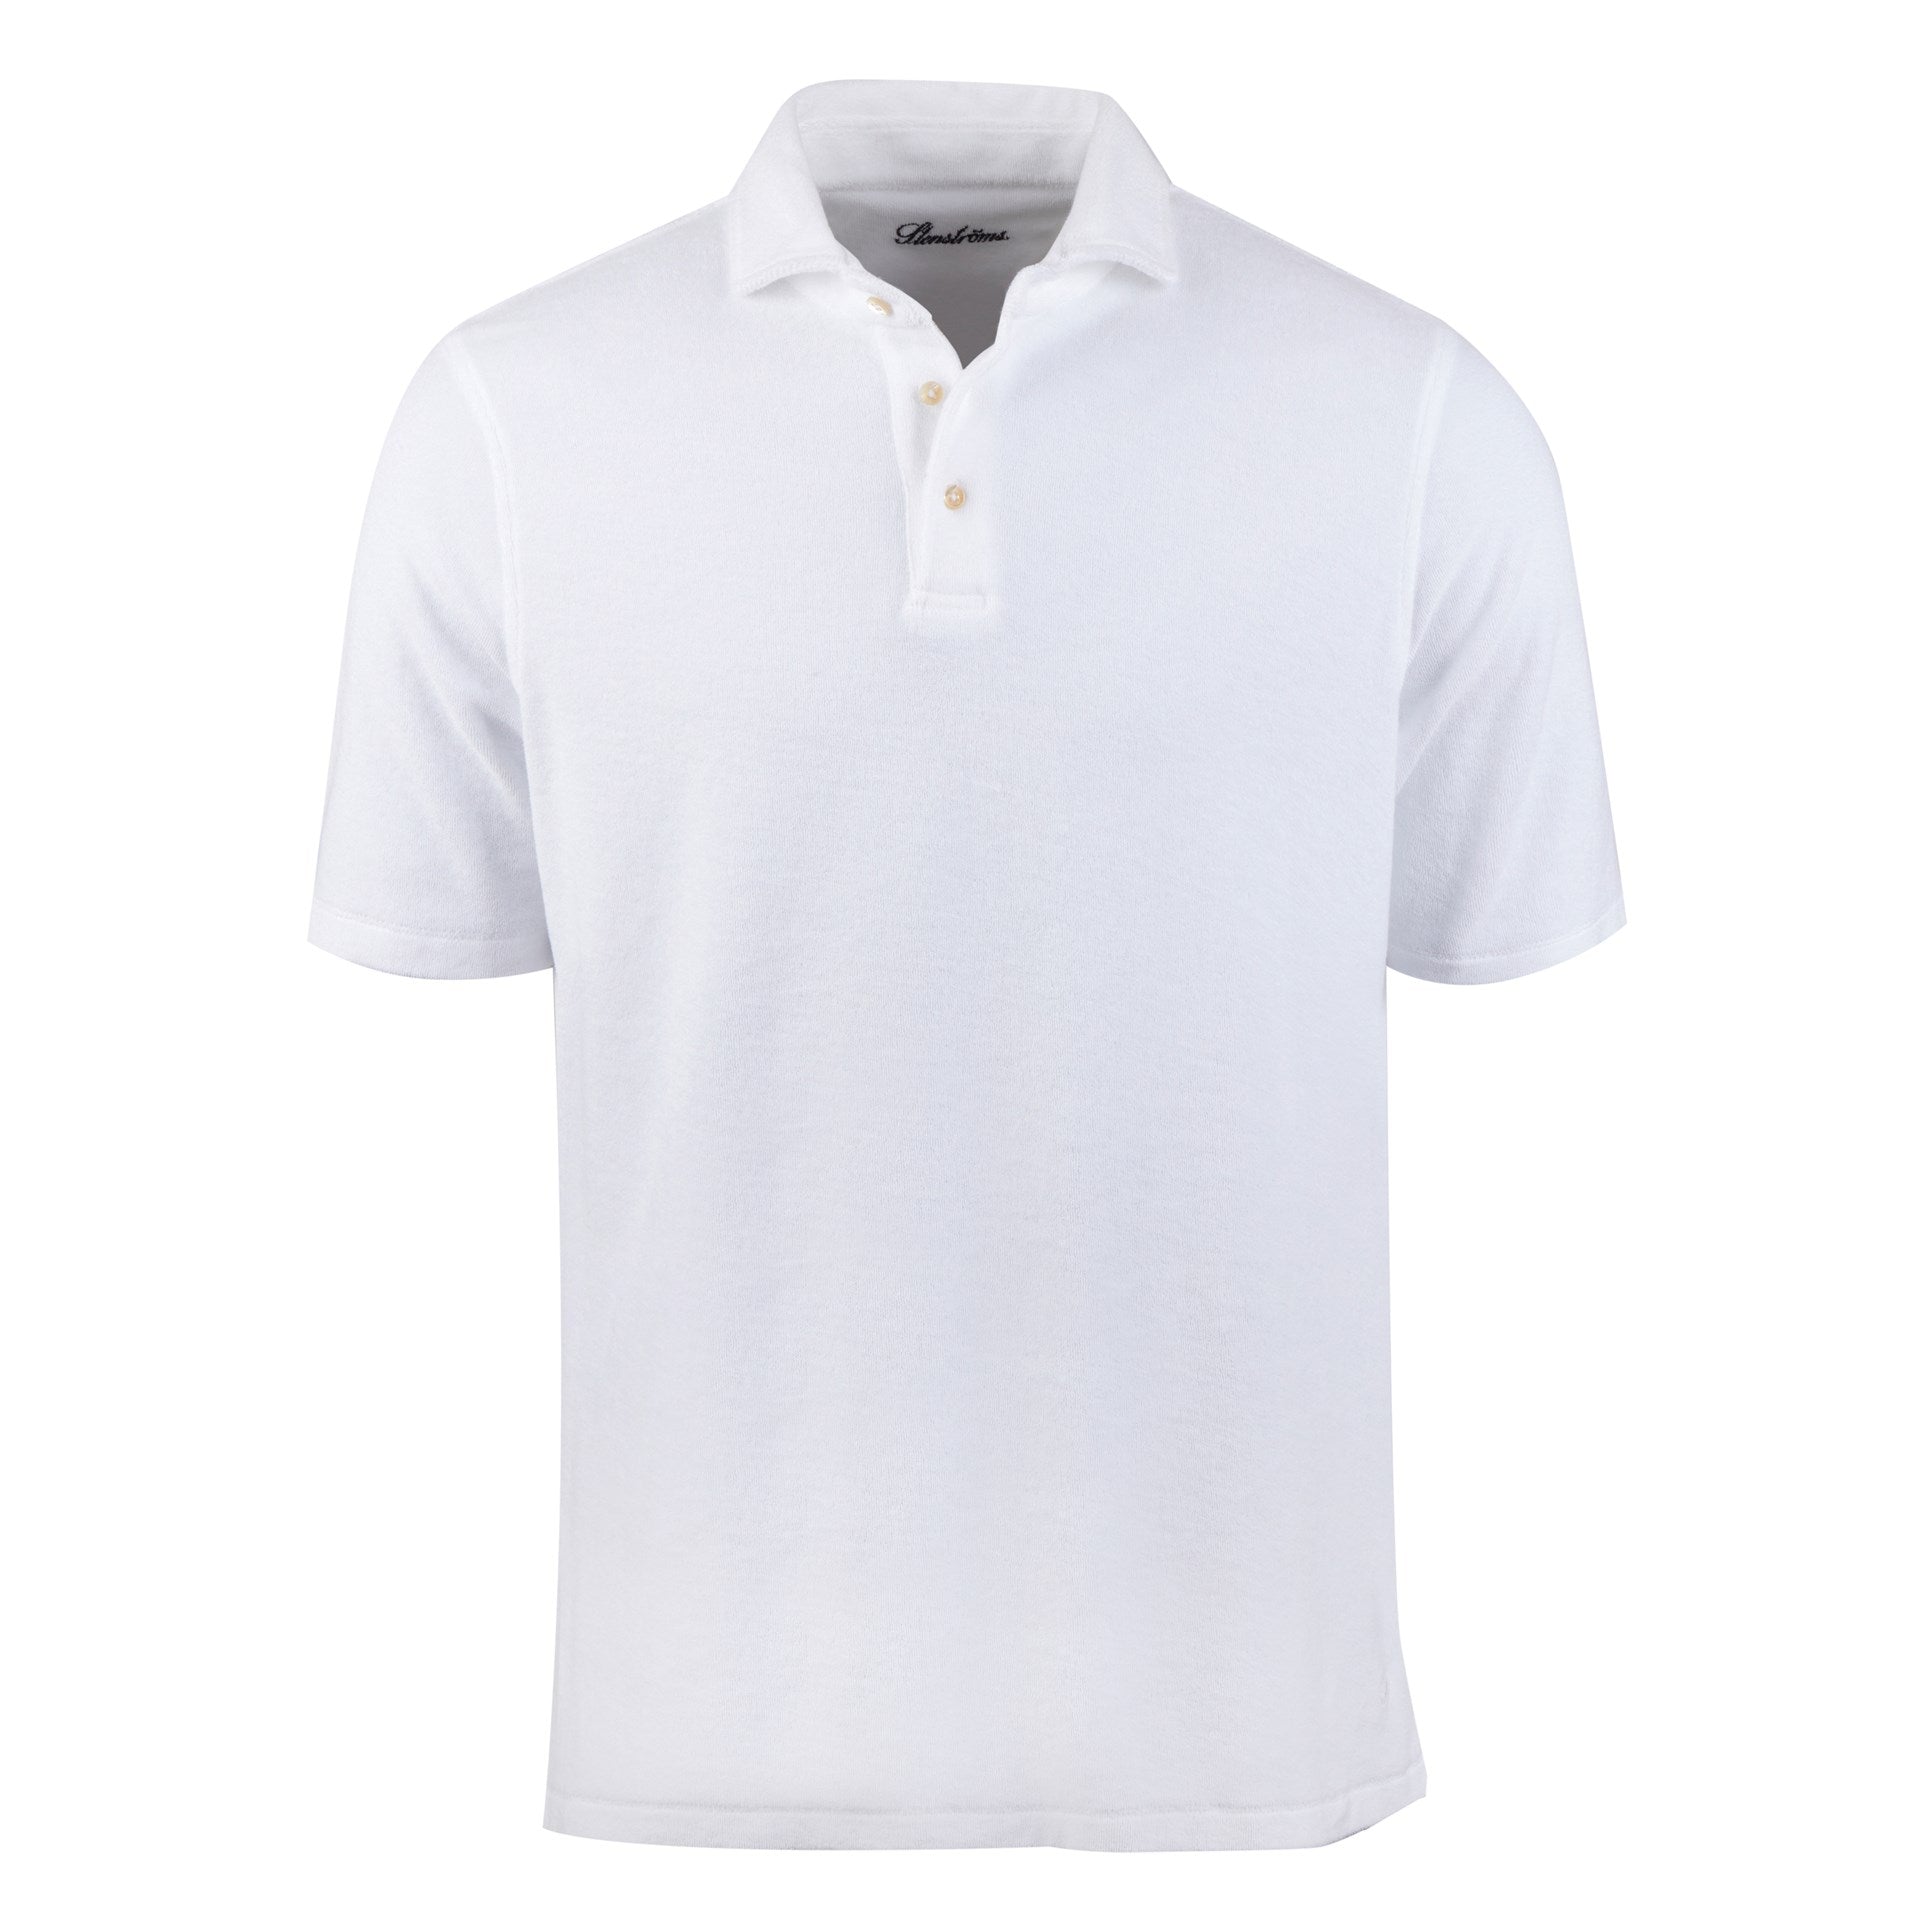 White Cotton Terry Polo Shirt